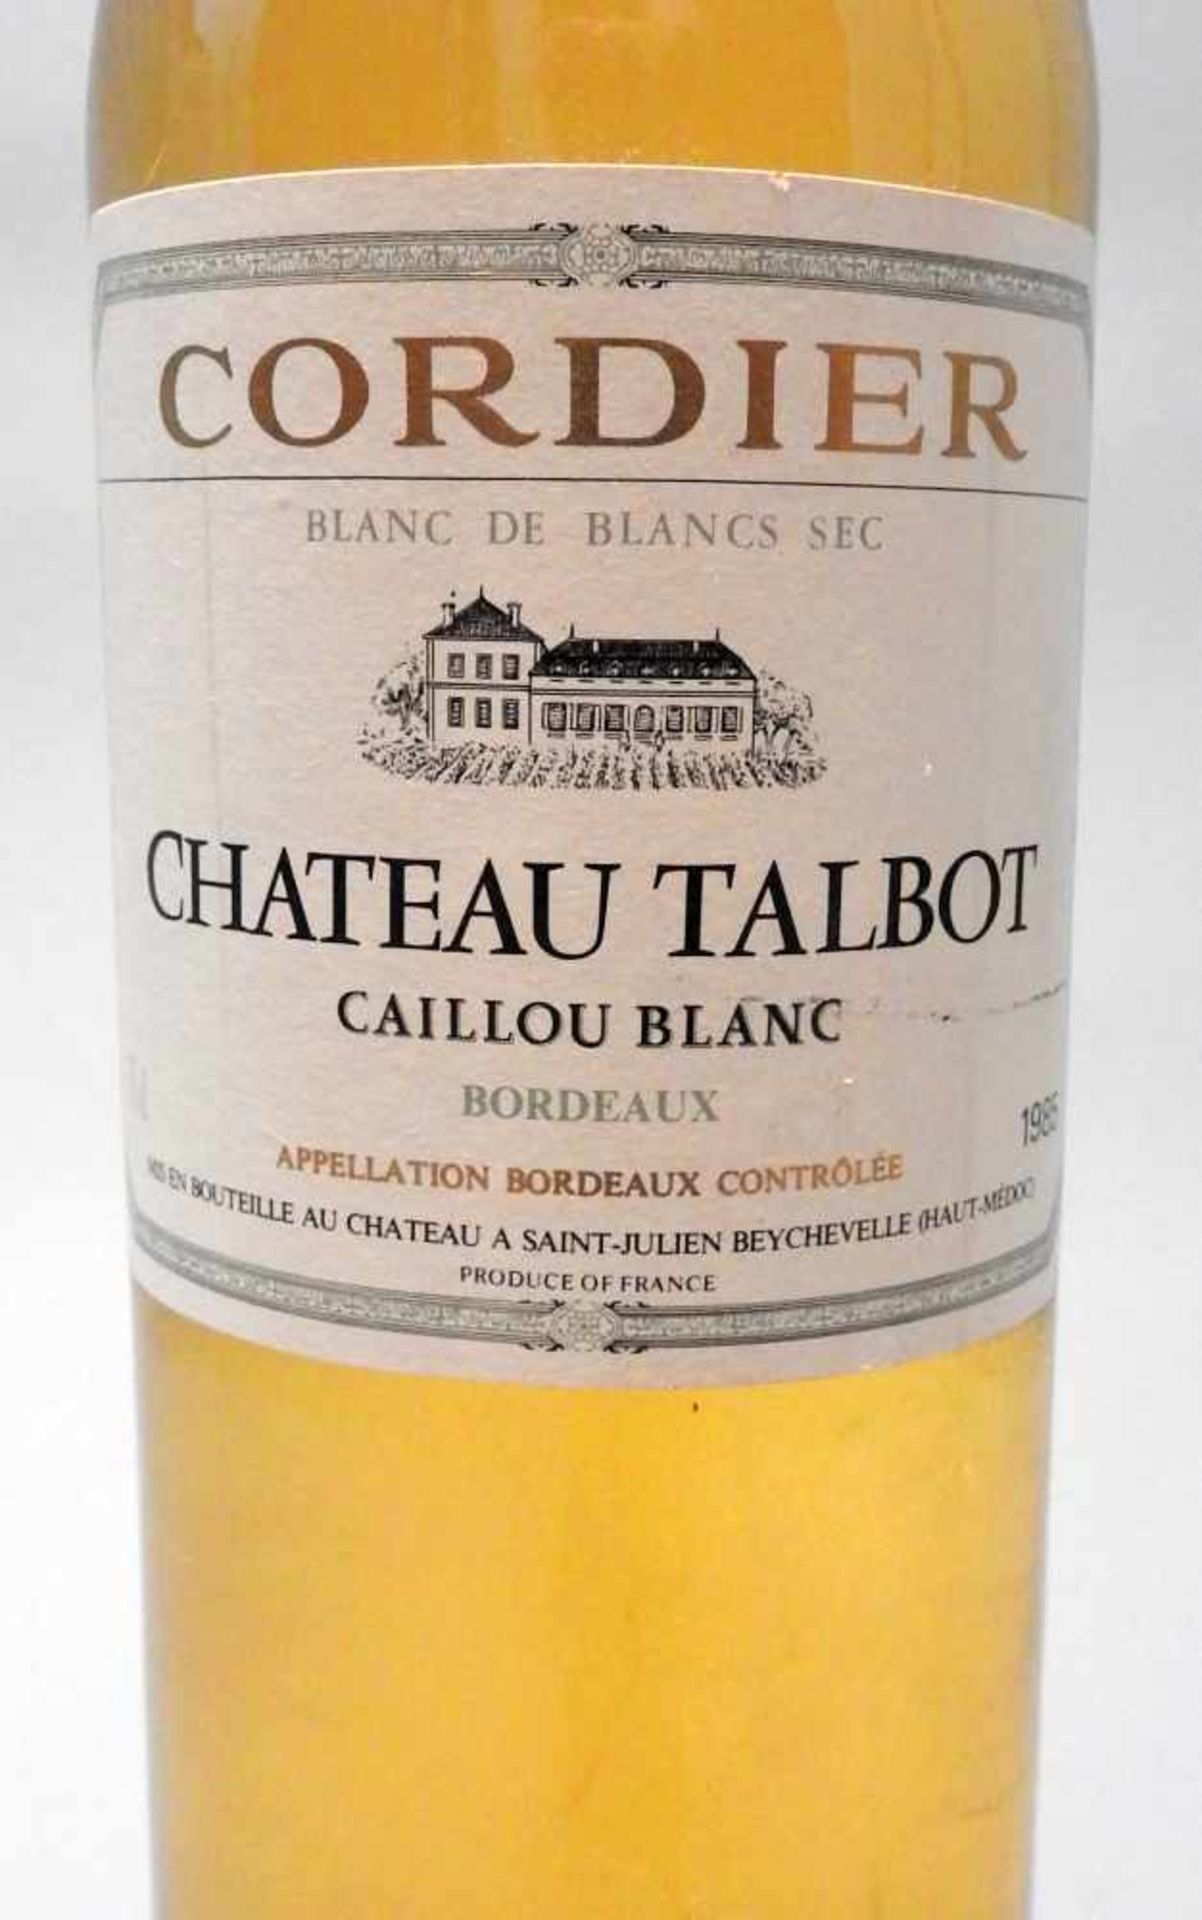 Caillou BlancChâteau Talbot Cordier, Blanc de Blancs sec. Jahrgang 1985, Inhalt 750 m - Image 2 of 2